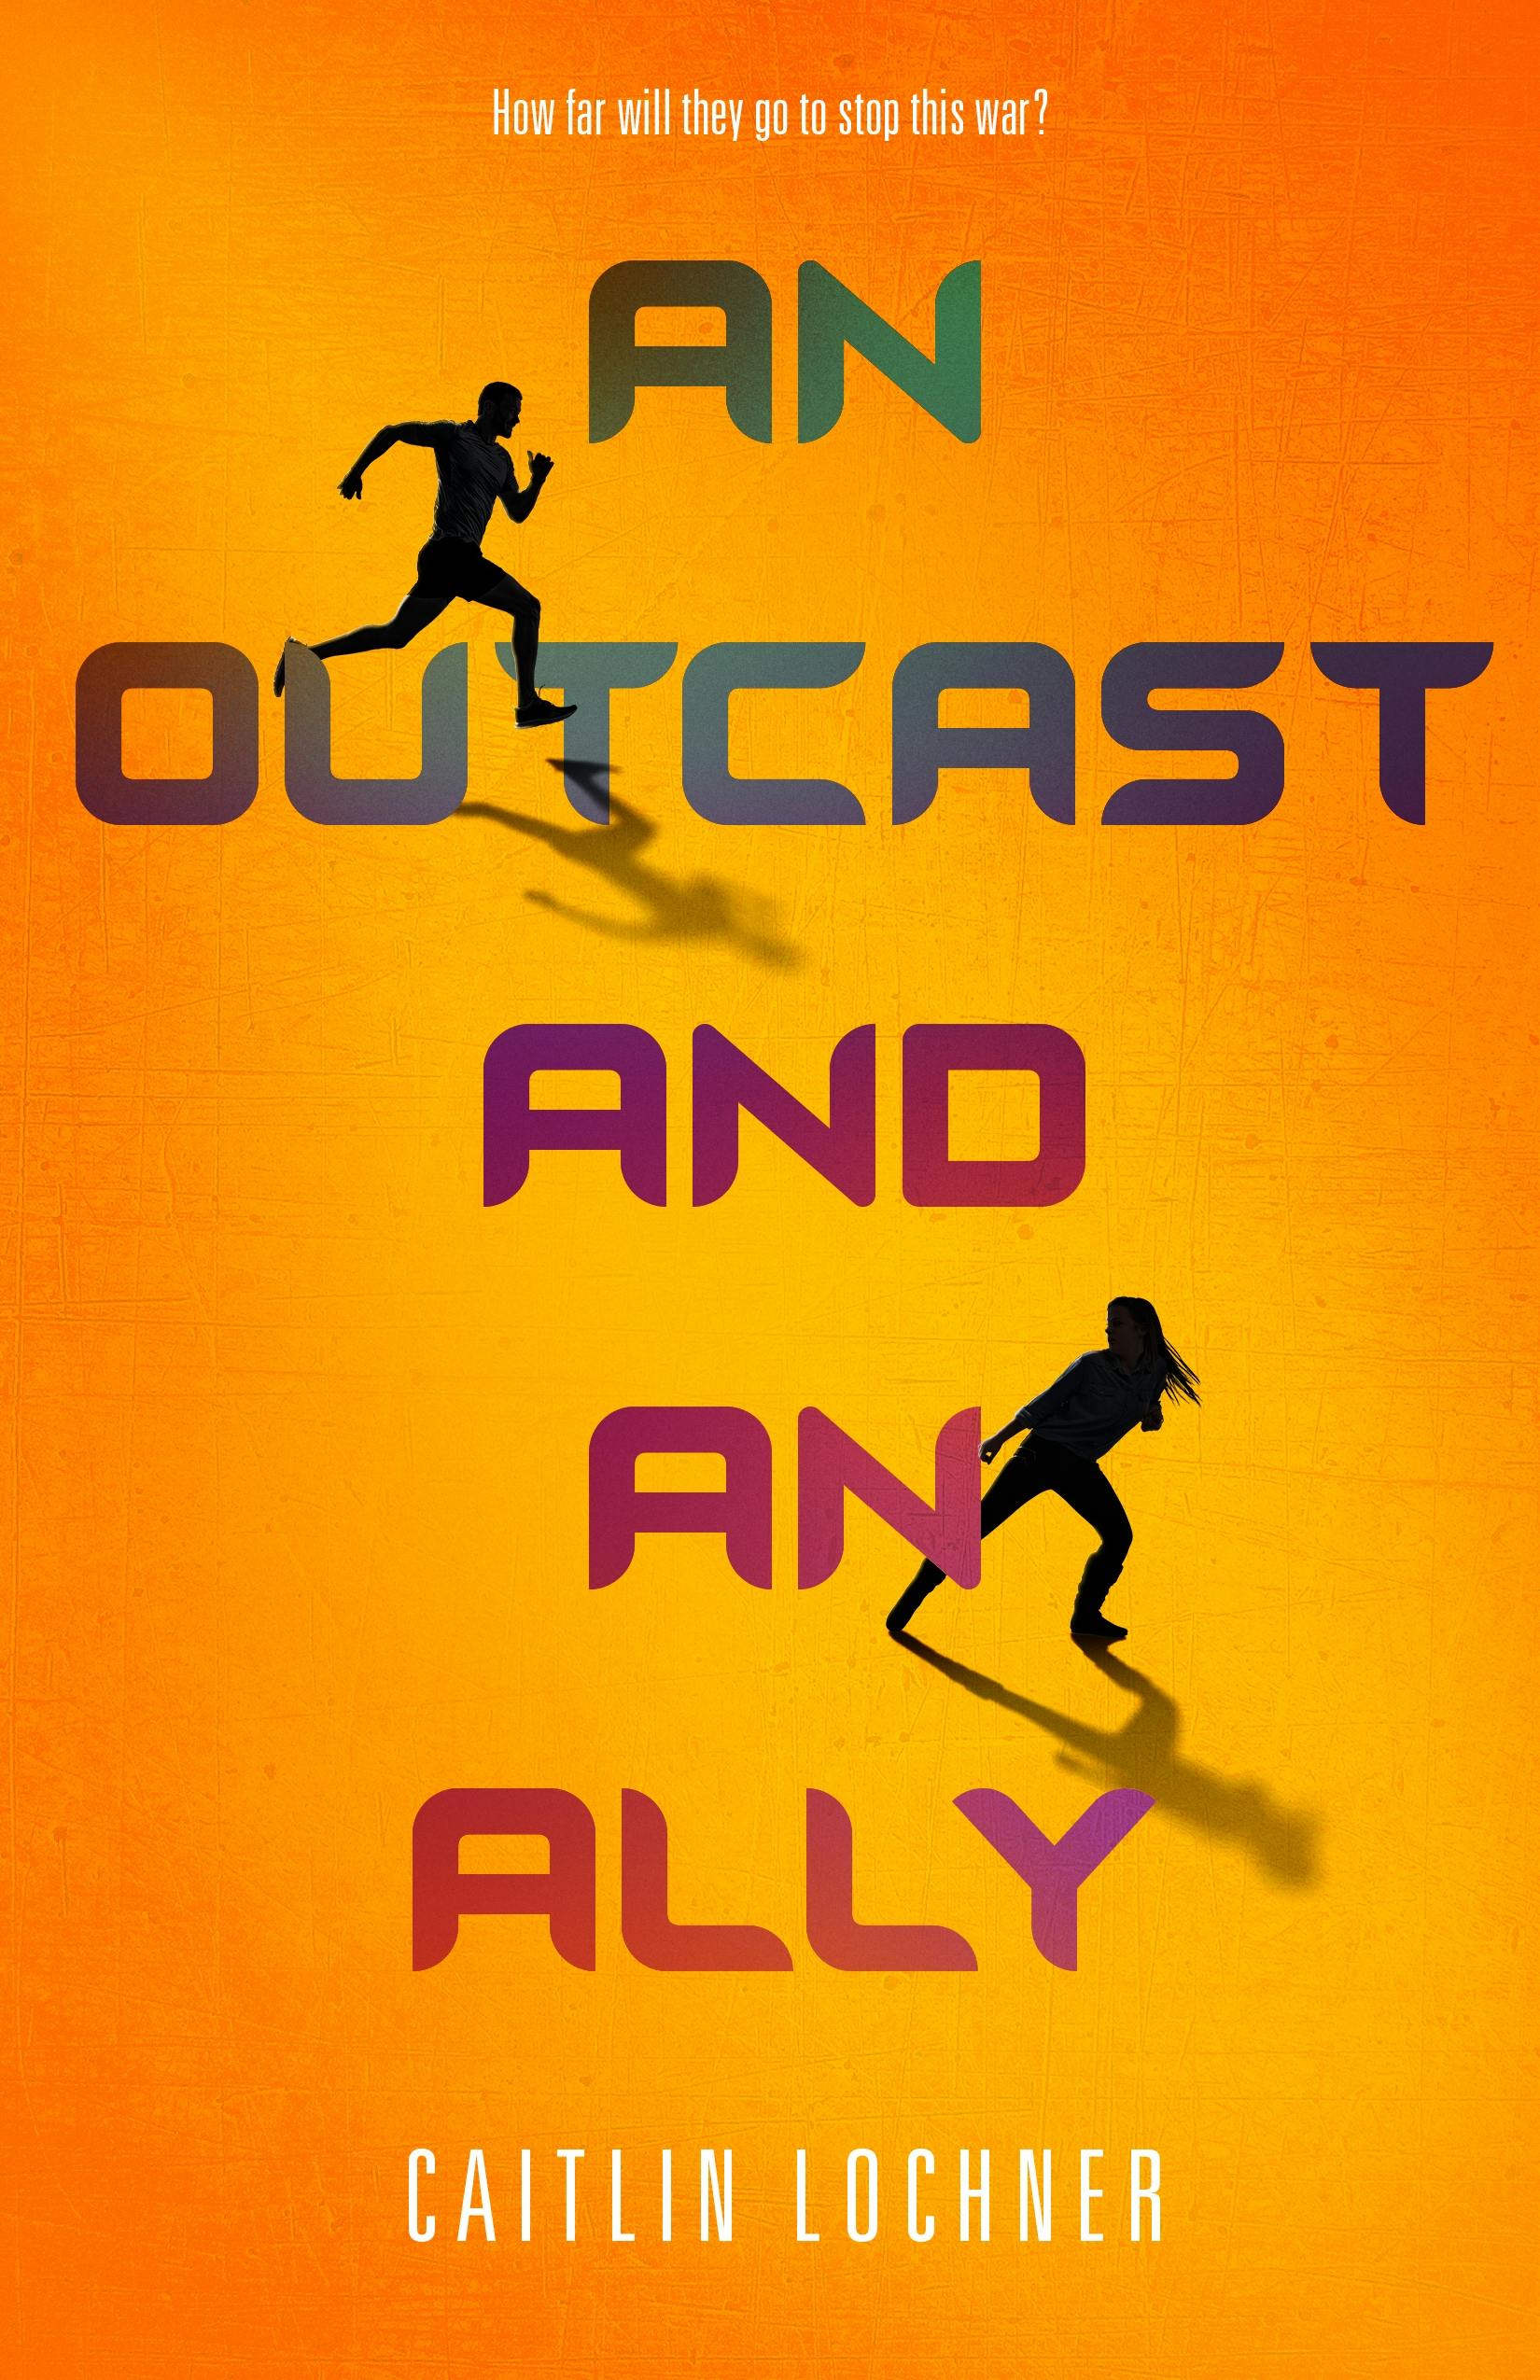 Outcast and an Ally